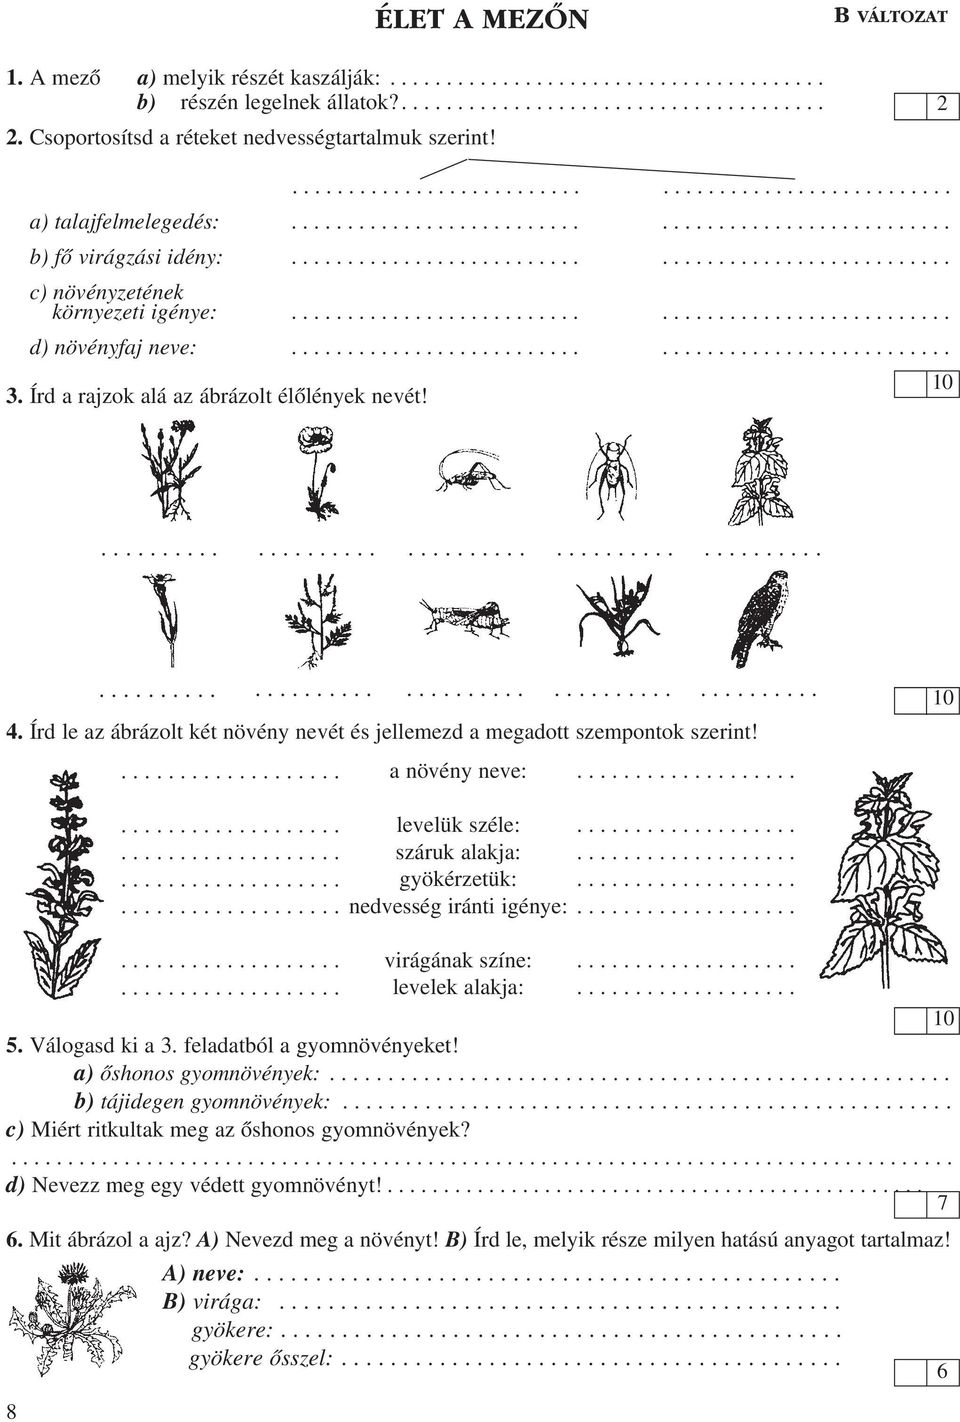 Írd le az ábrázolt két növény nevét és jellemezd a megadott szempontok szerint!. Válogasd ki a 3. feladatból a gyomnövényeket! a) ôshonos gyomnövények:............... b) tájidegen gyomnövények:.